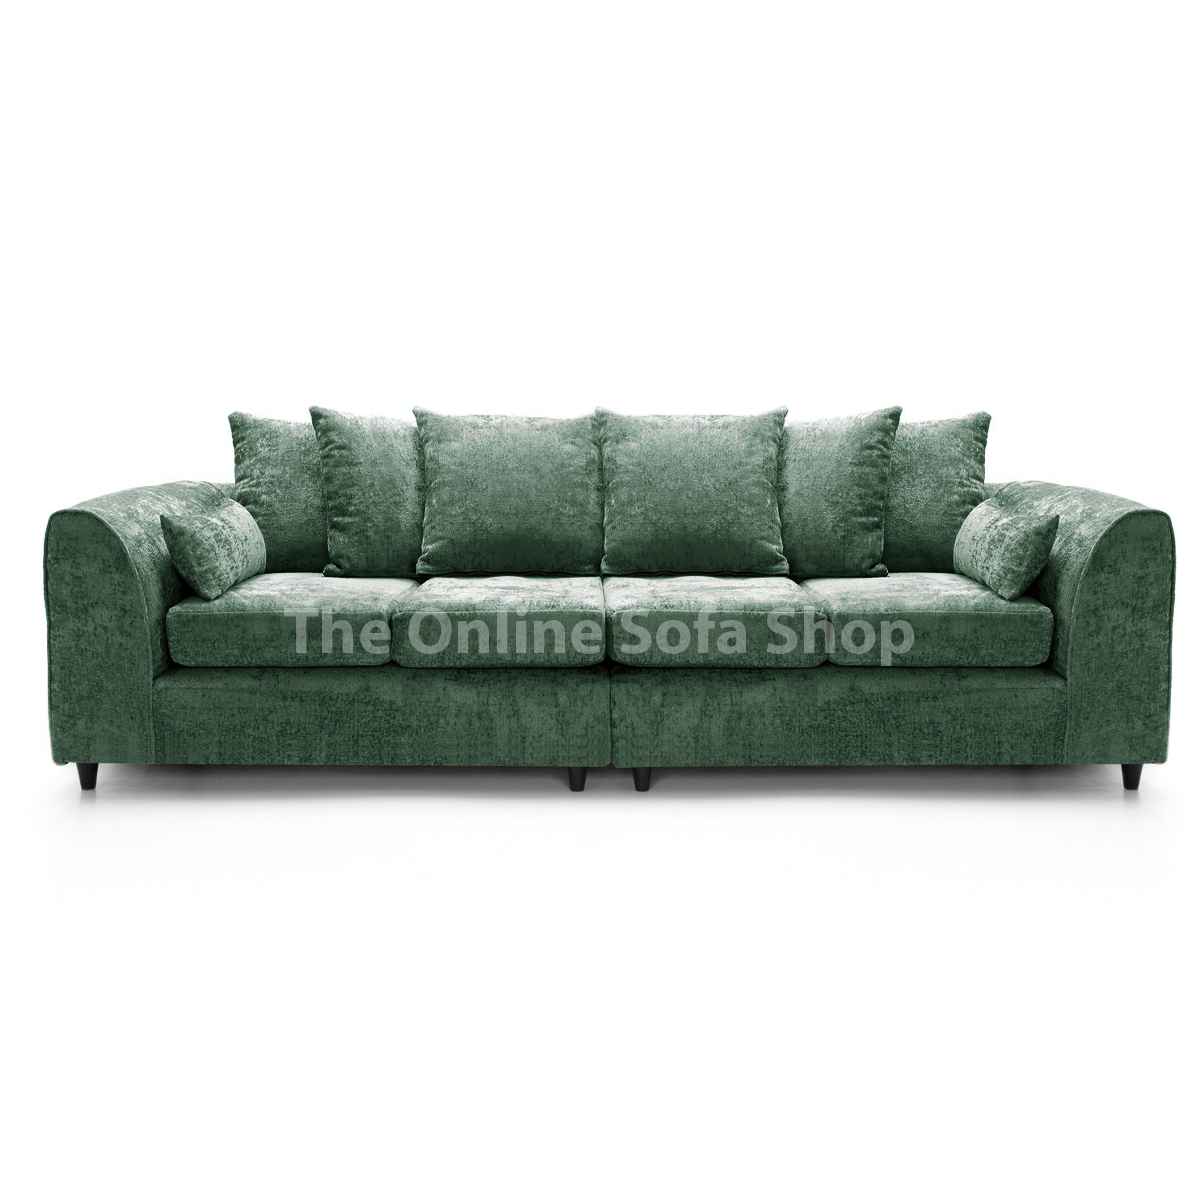 Monaco Chenille Fabric 4 Seater Sofa – Green – The Online Sofa Shop